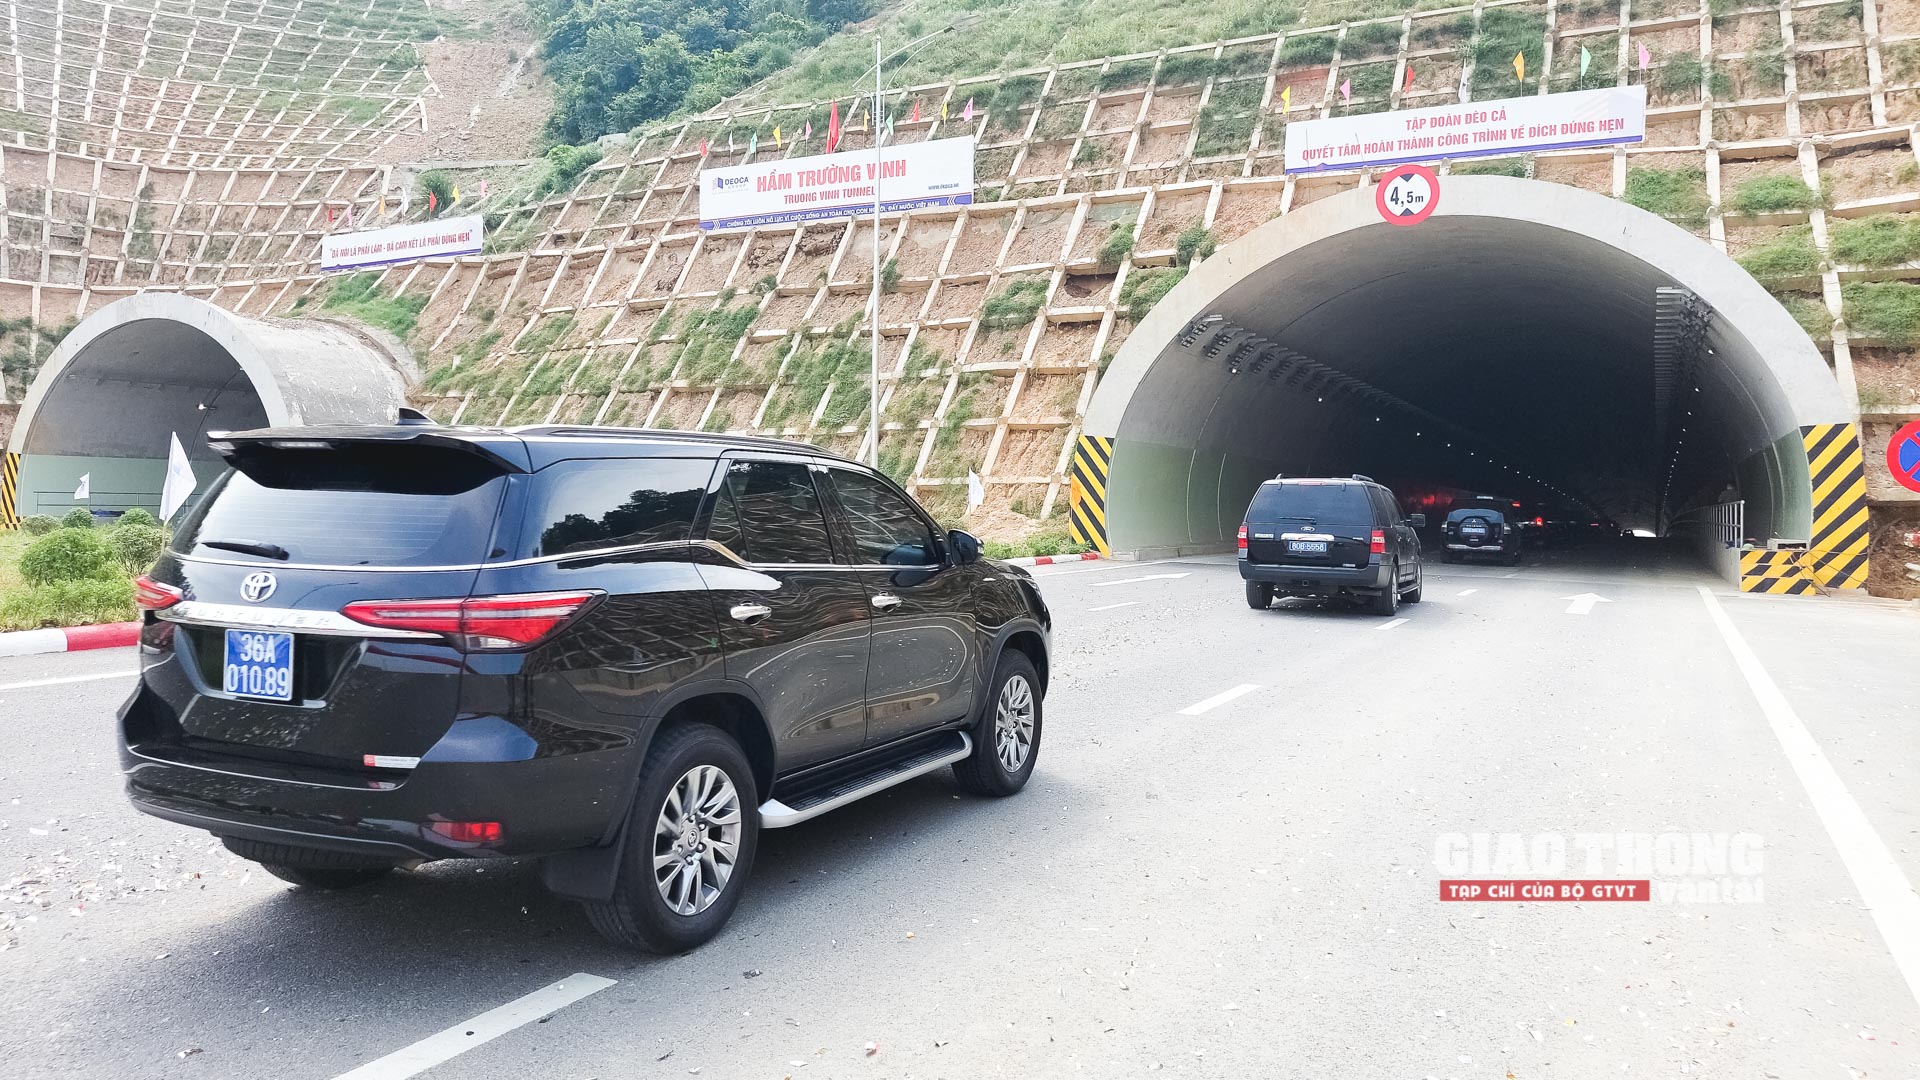 Chính thức khánh thành 2 cao tốc từ Thanh Hóa đến Nghệ An - Ảnh 8.